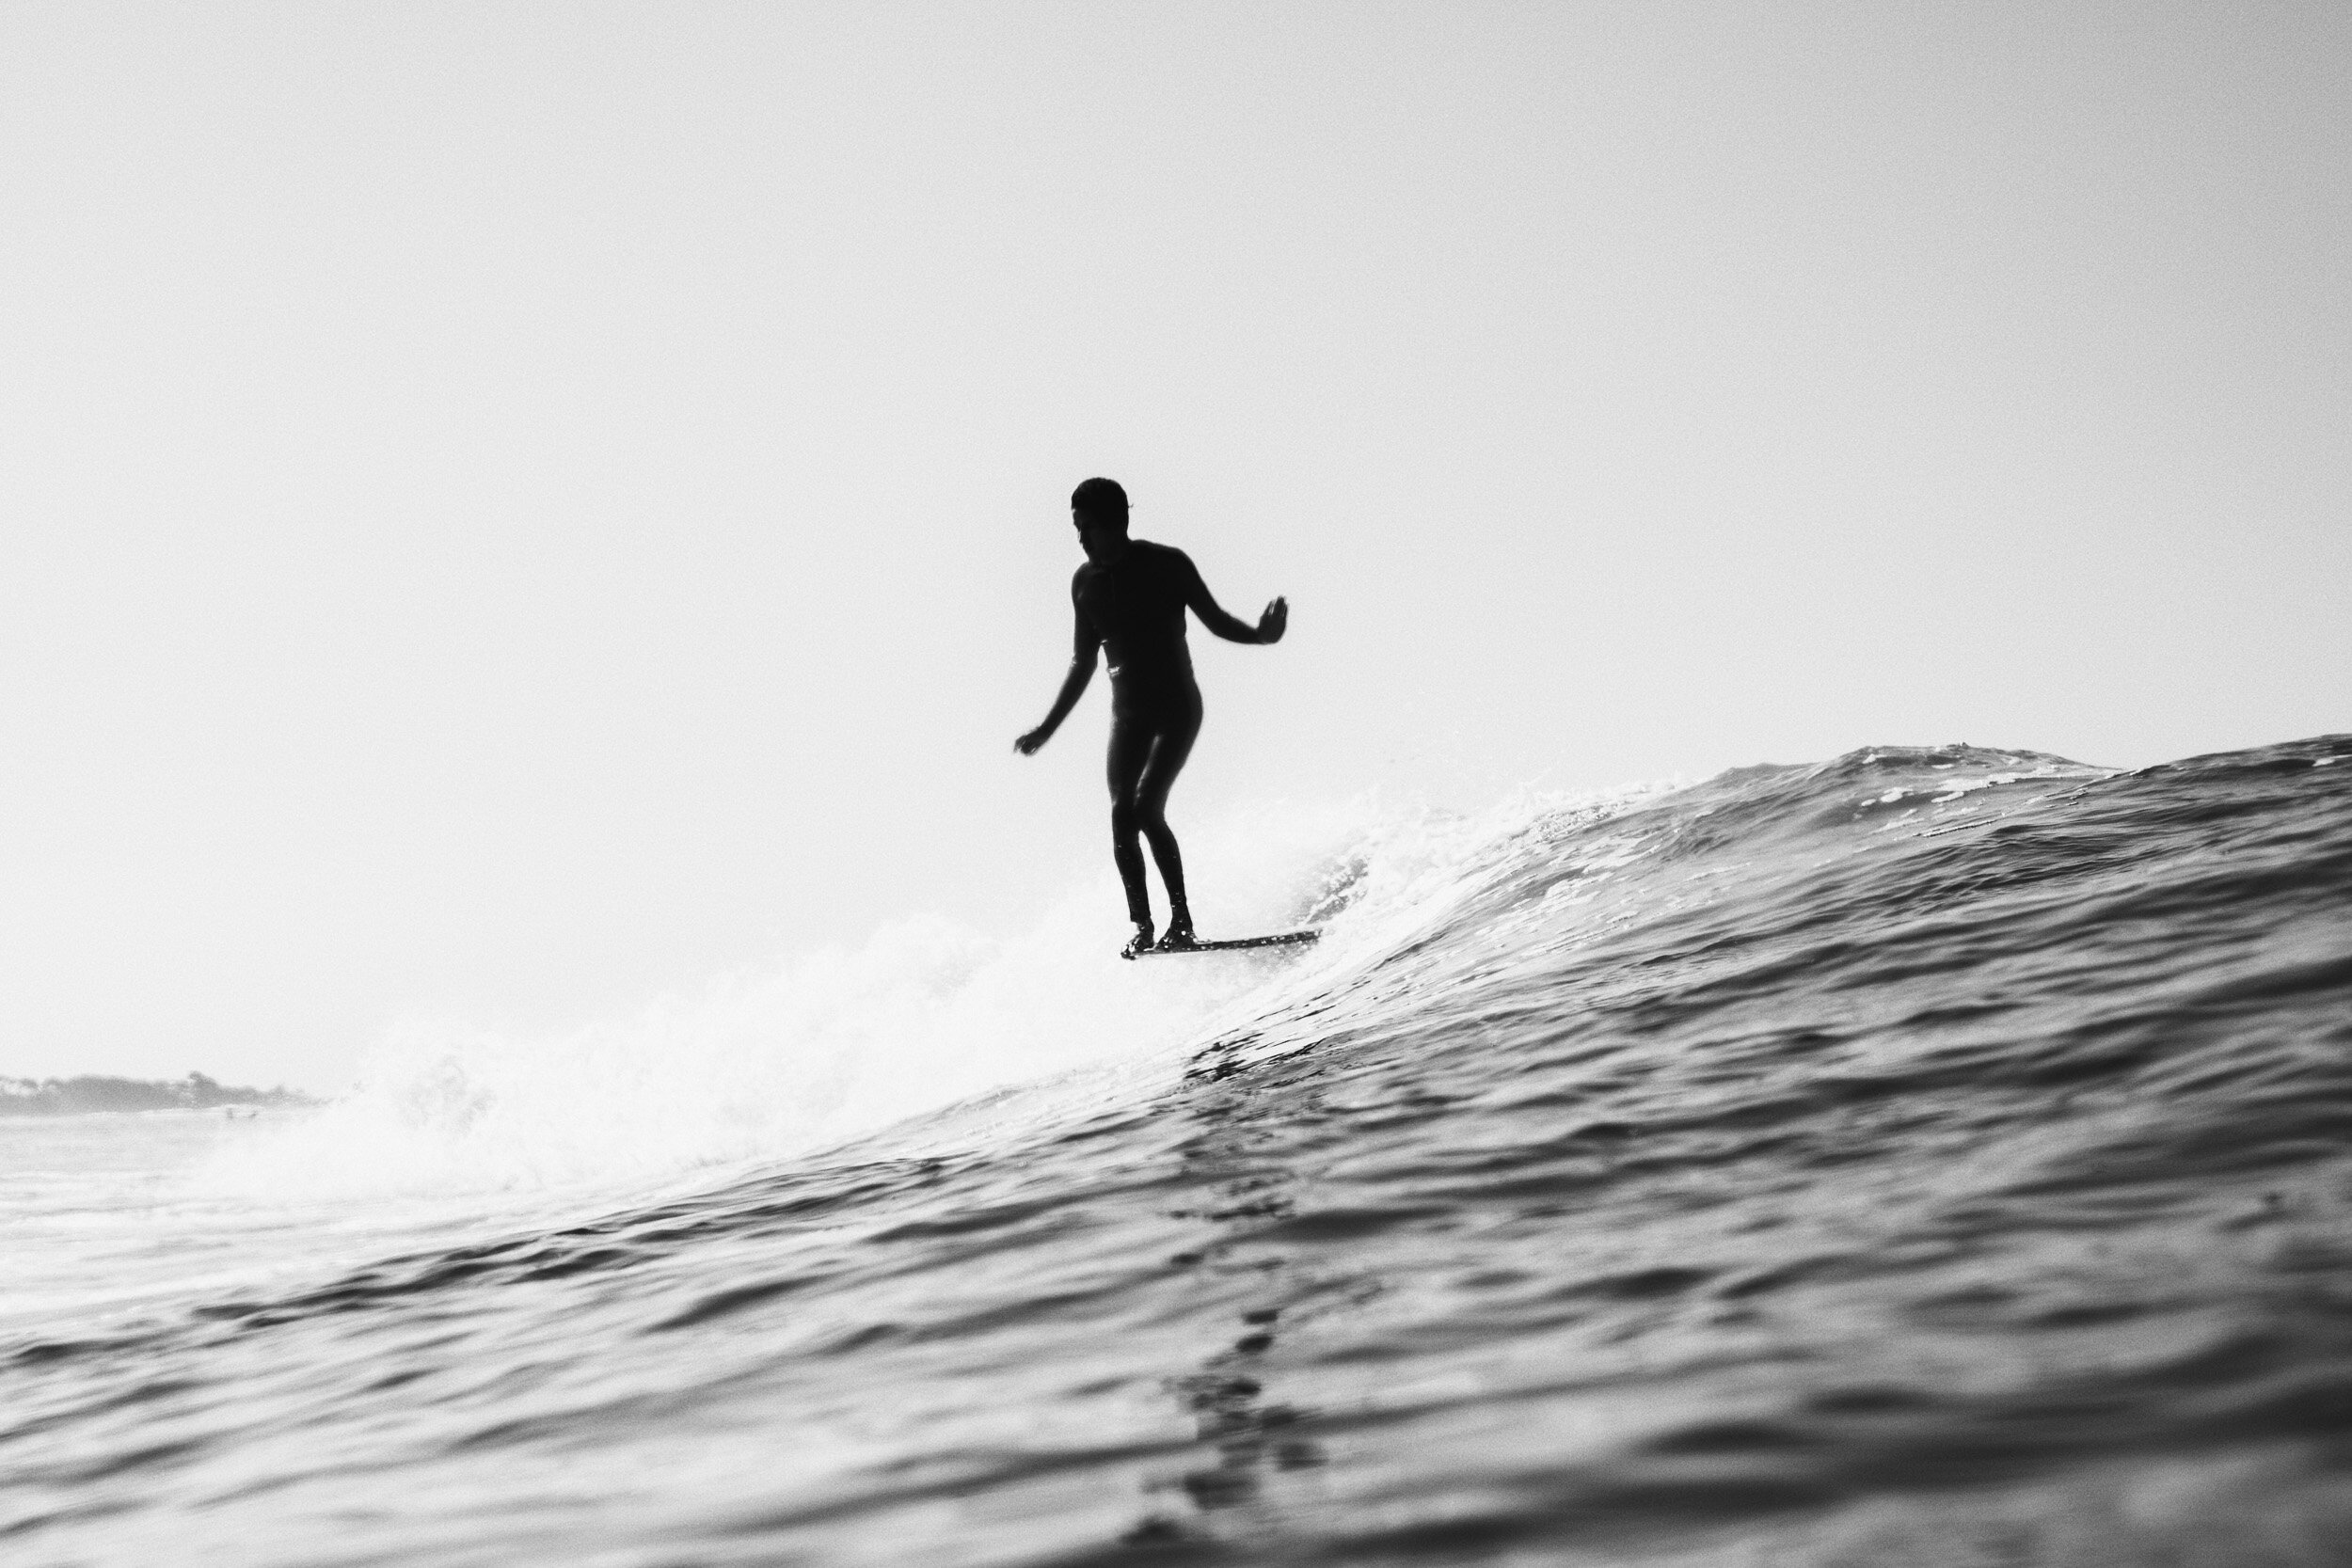 la-saladita-mexico-surf-longboard-fotografia-heiko-bothe-1348.jpg